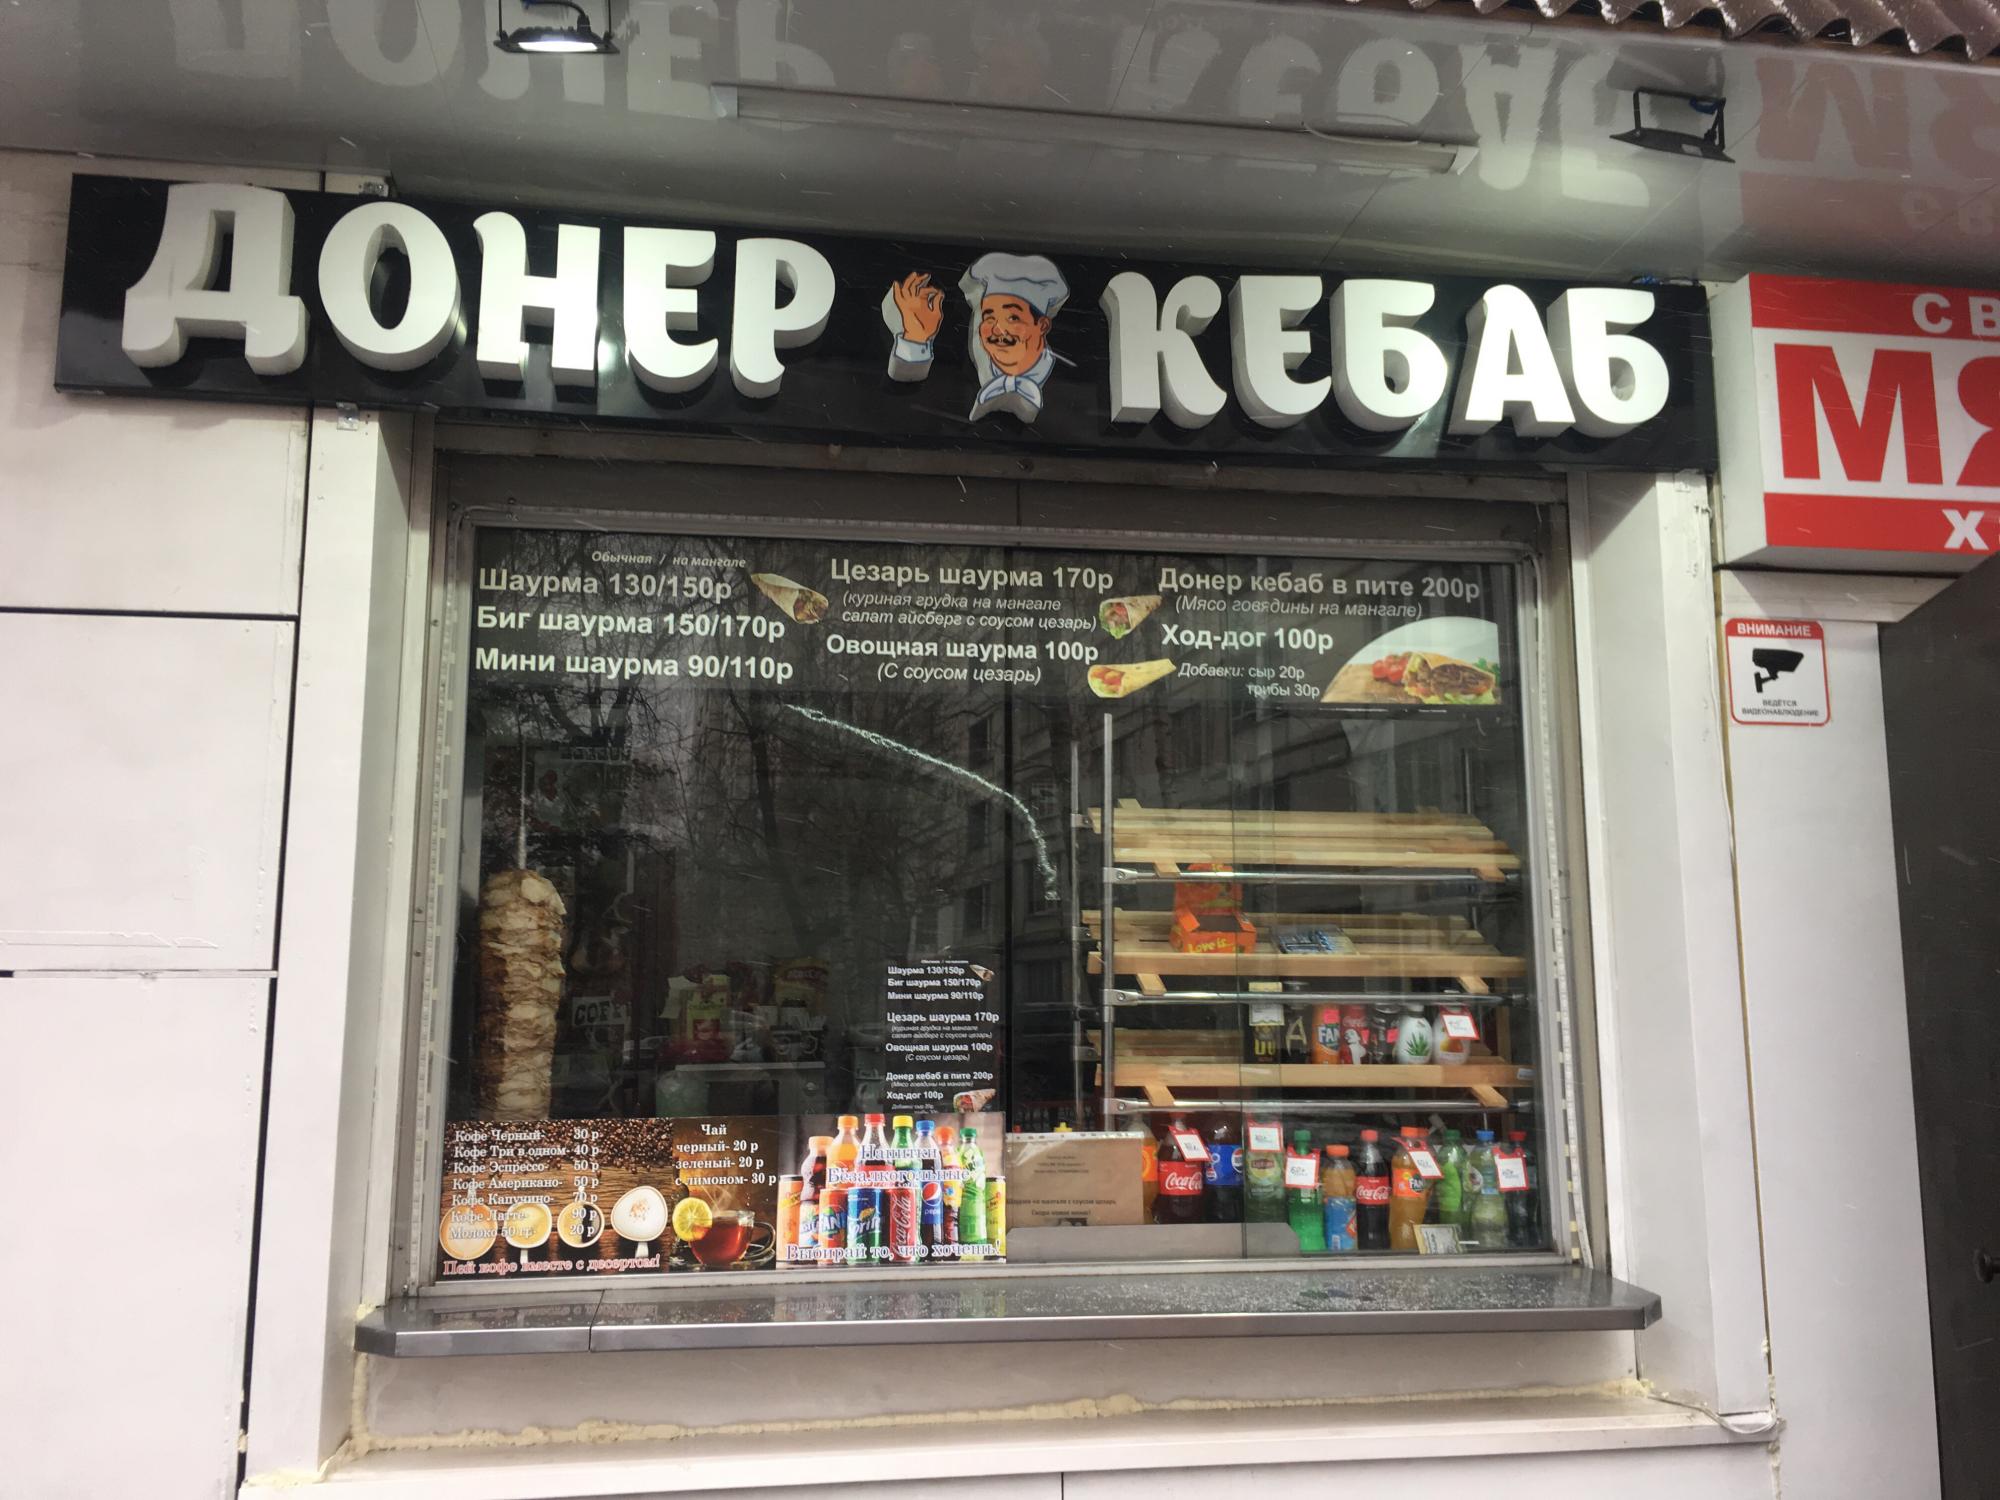 Шаверма москва. Шаурма. Doner Kebab вывеска. Московская шаурма. Донер шаурма Москва.